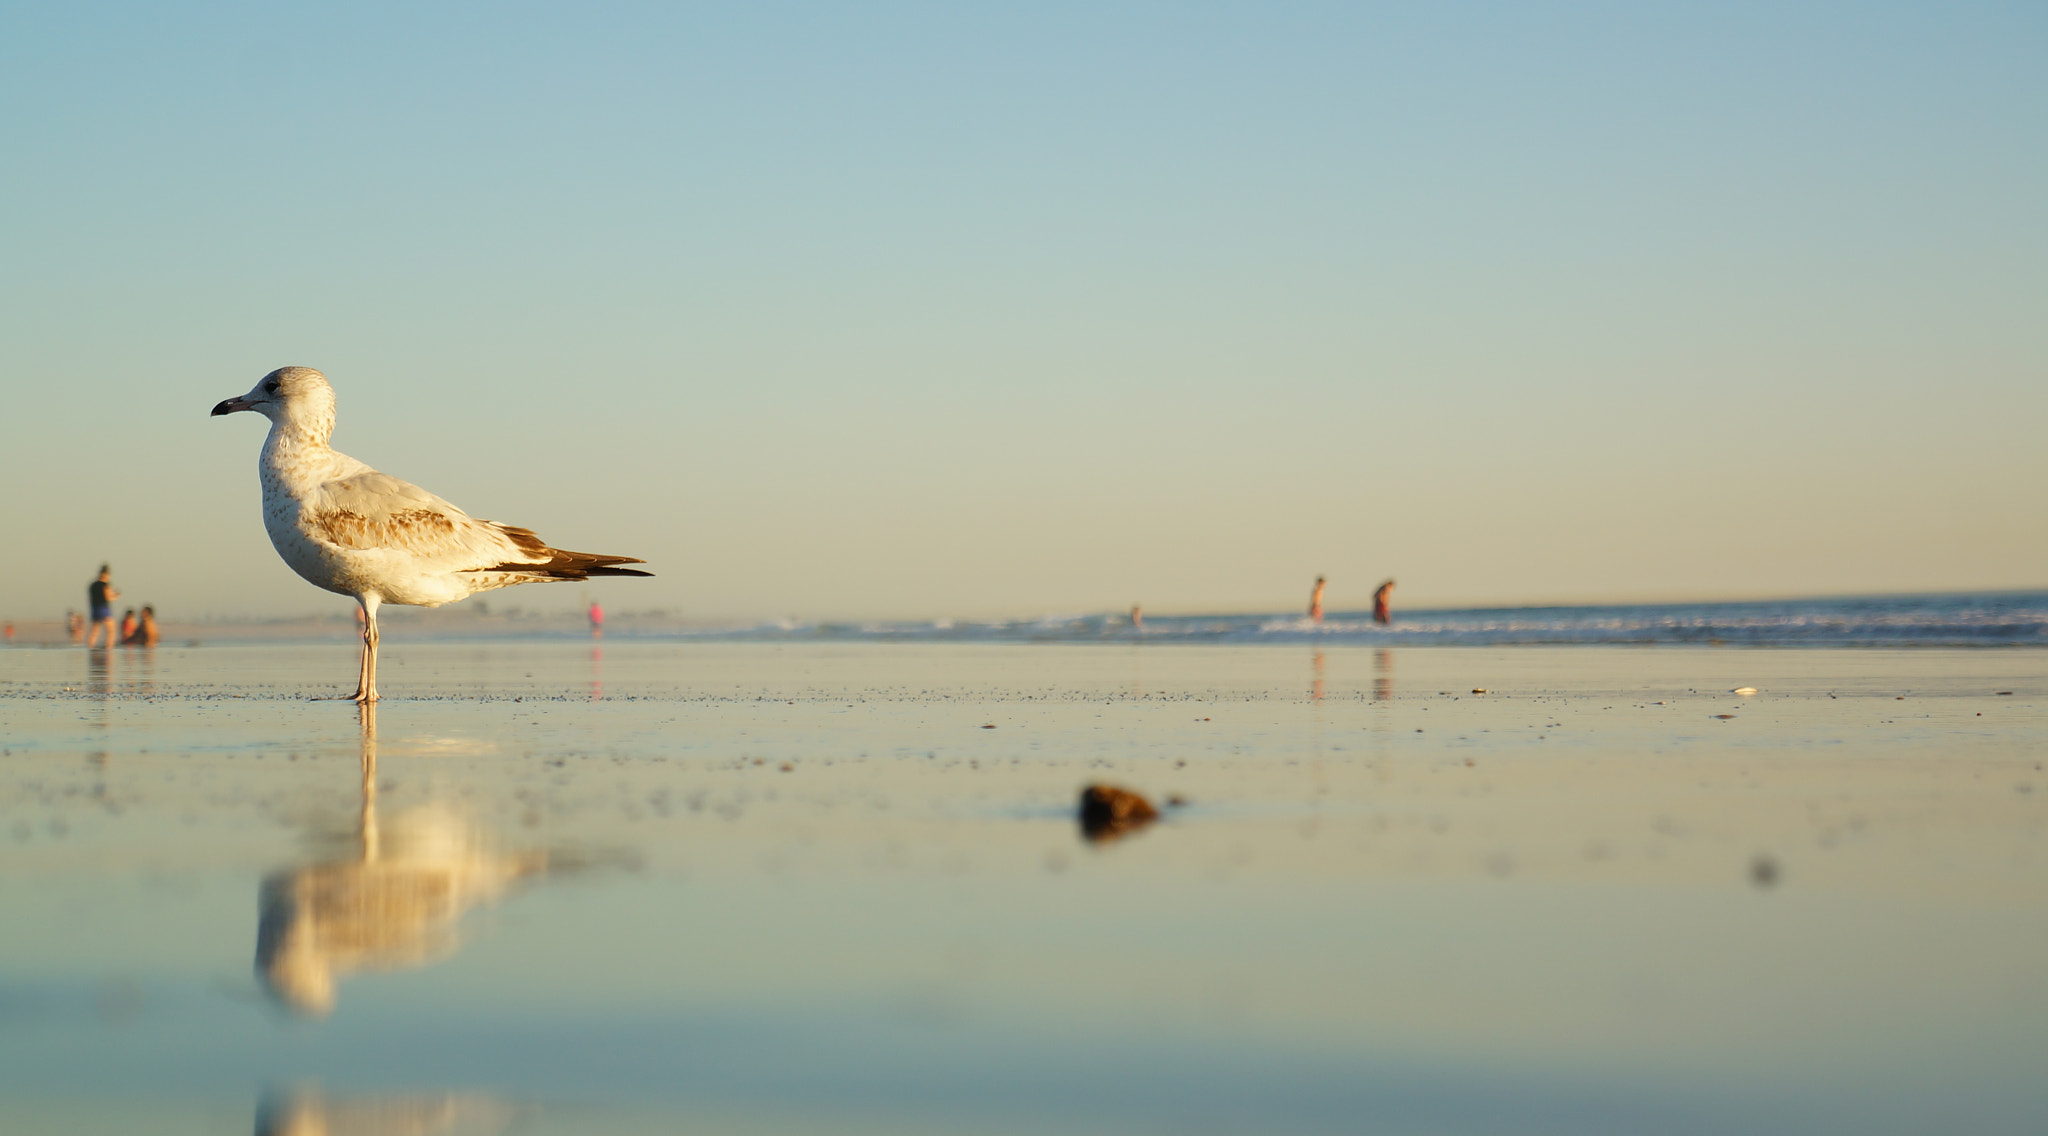 Sony Alpha NEX-5R + Sony E 18-55mm F3.5-5.6 OSS sample photo. Seagull sunset beach photography